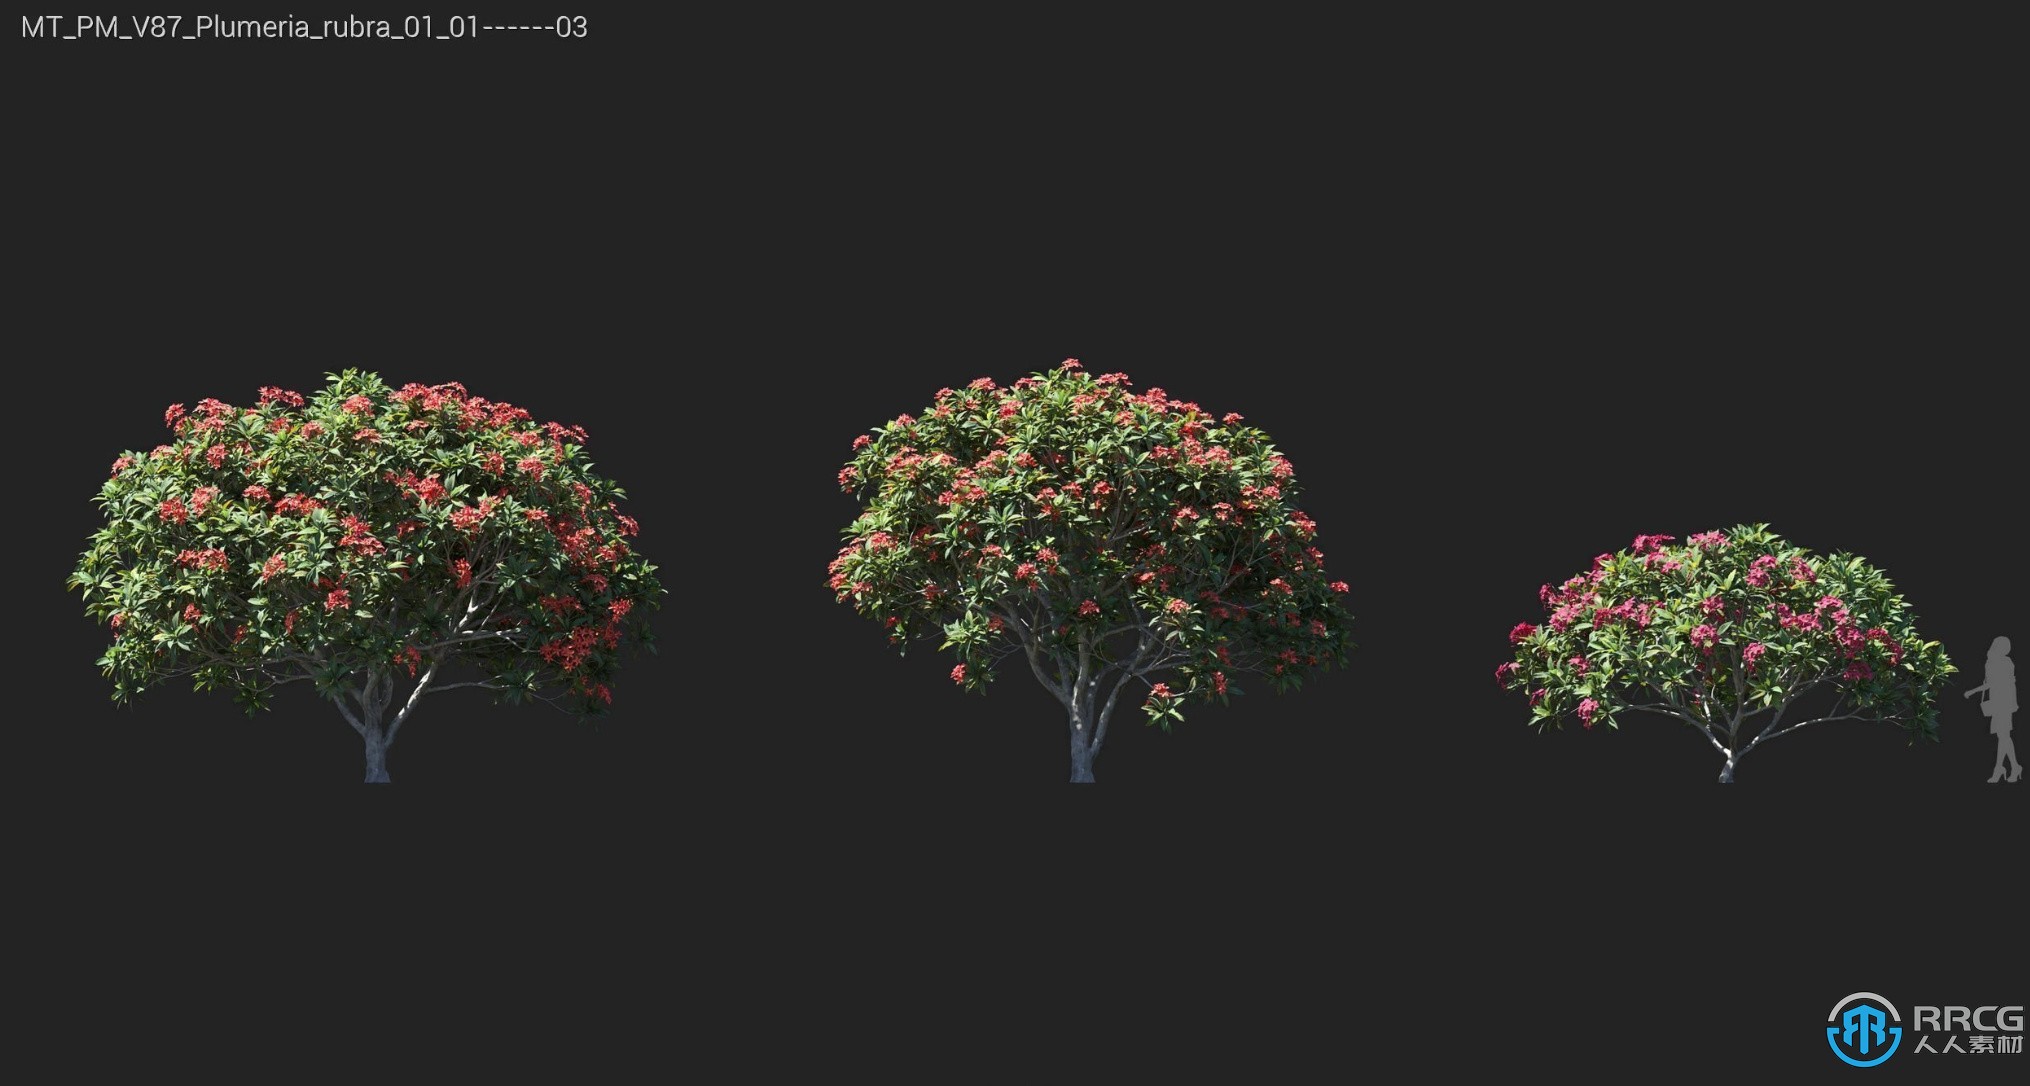 72组常青橡树挪威枫树霍尔姆橡树等植物3D模型合集